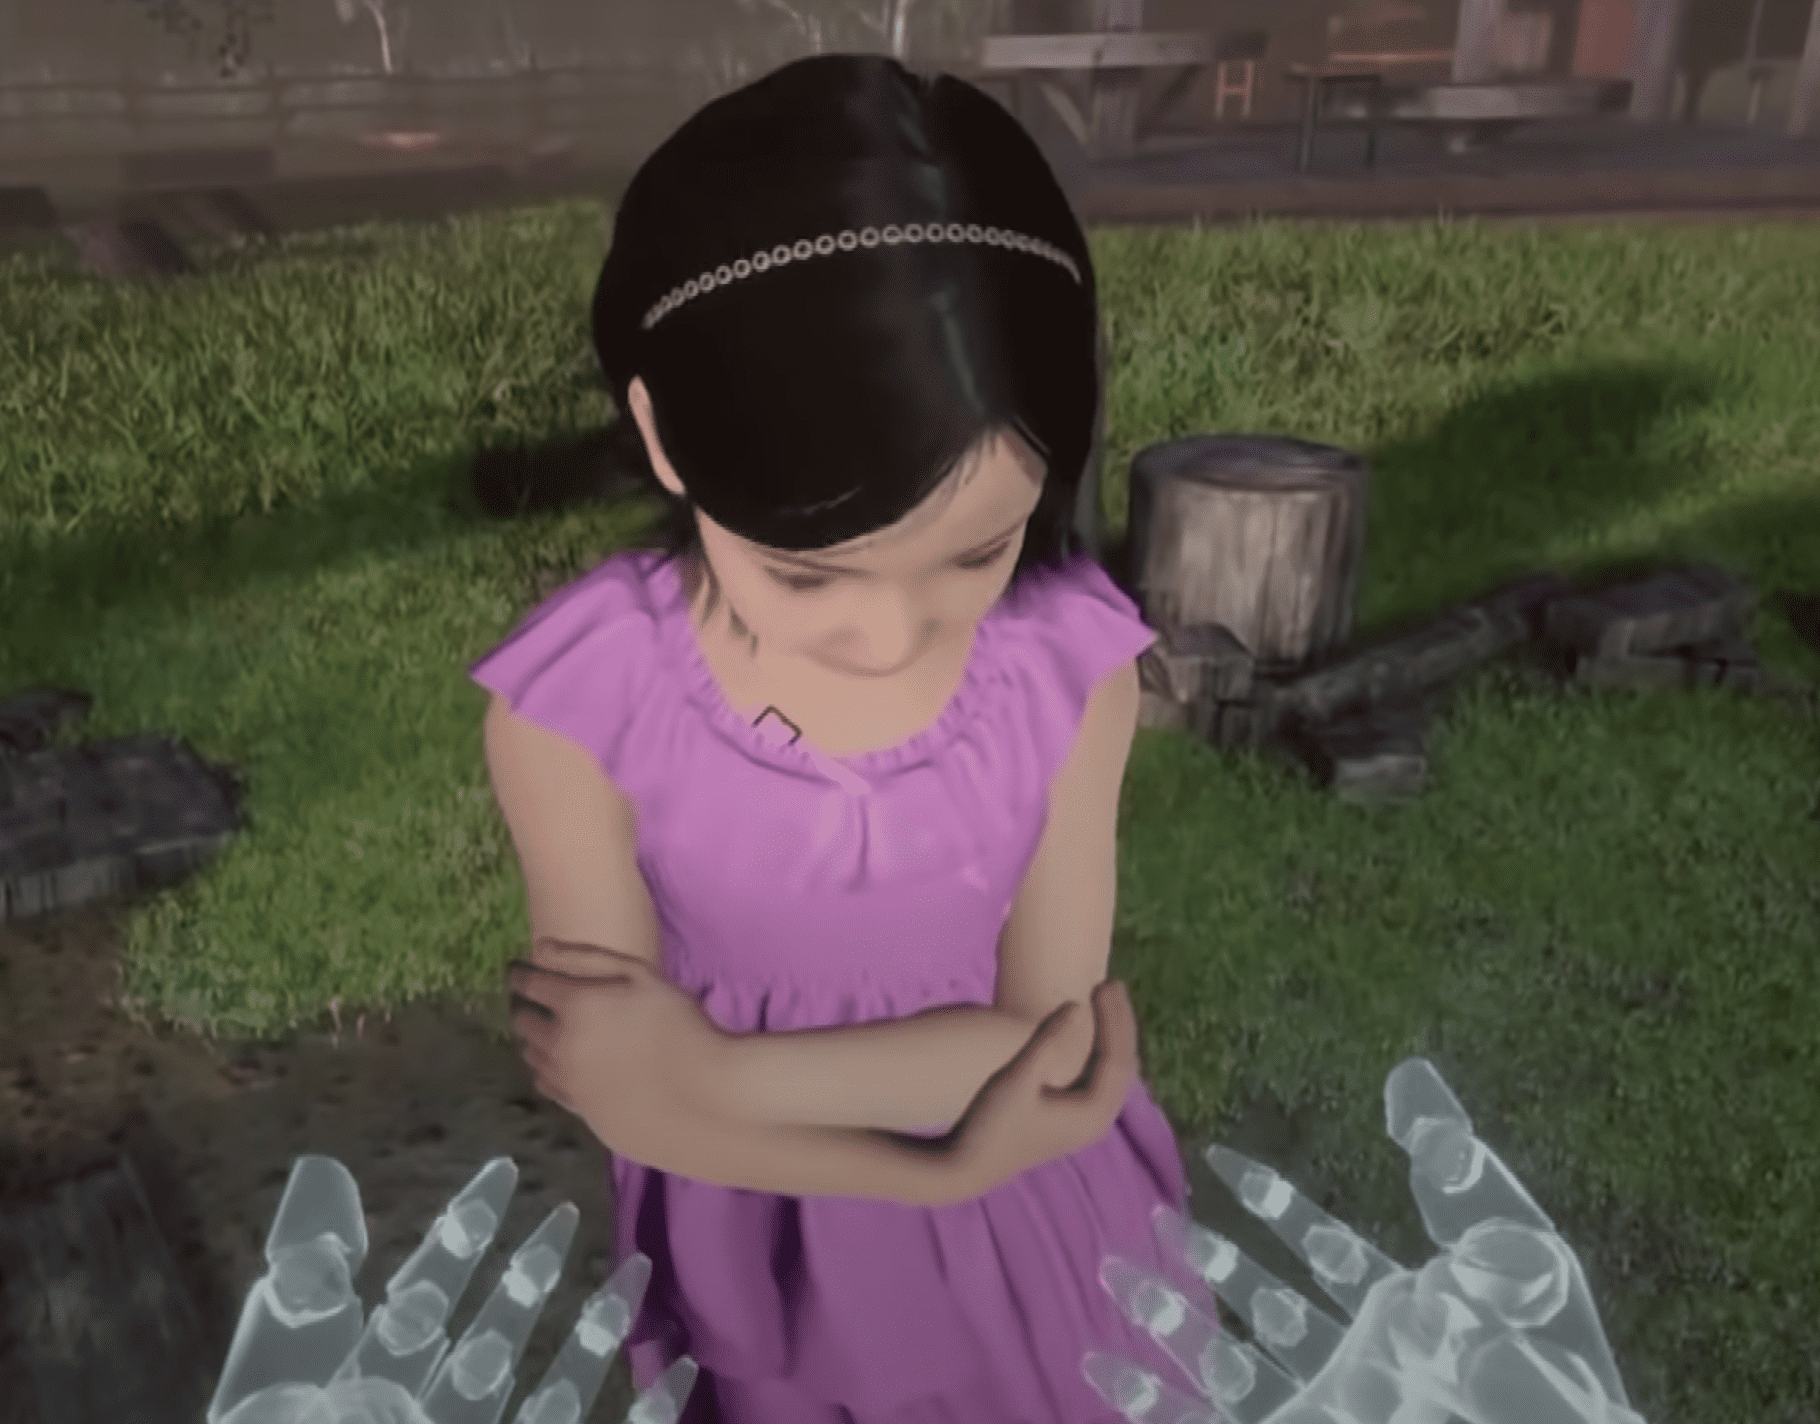 Eine Mutter greift per Virtual Reality nach ihrer verstorbenen Tochter | Quelle: Youtube/MBClife